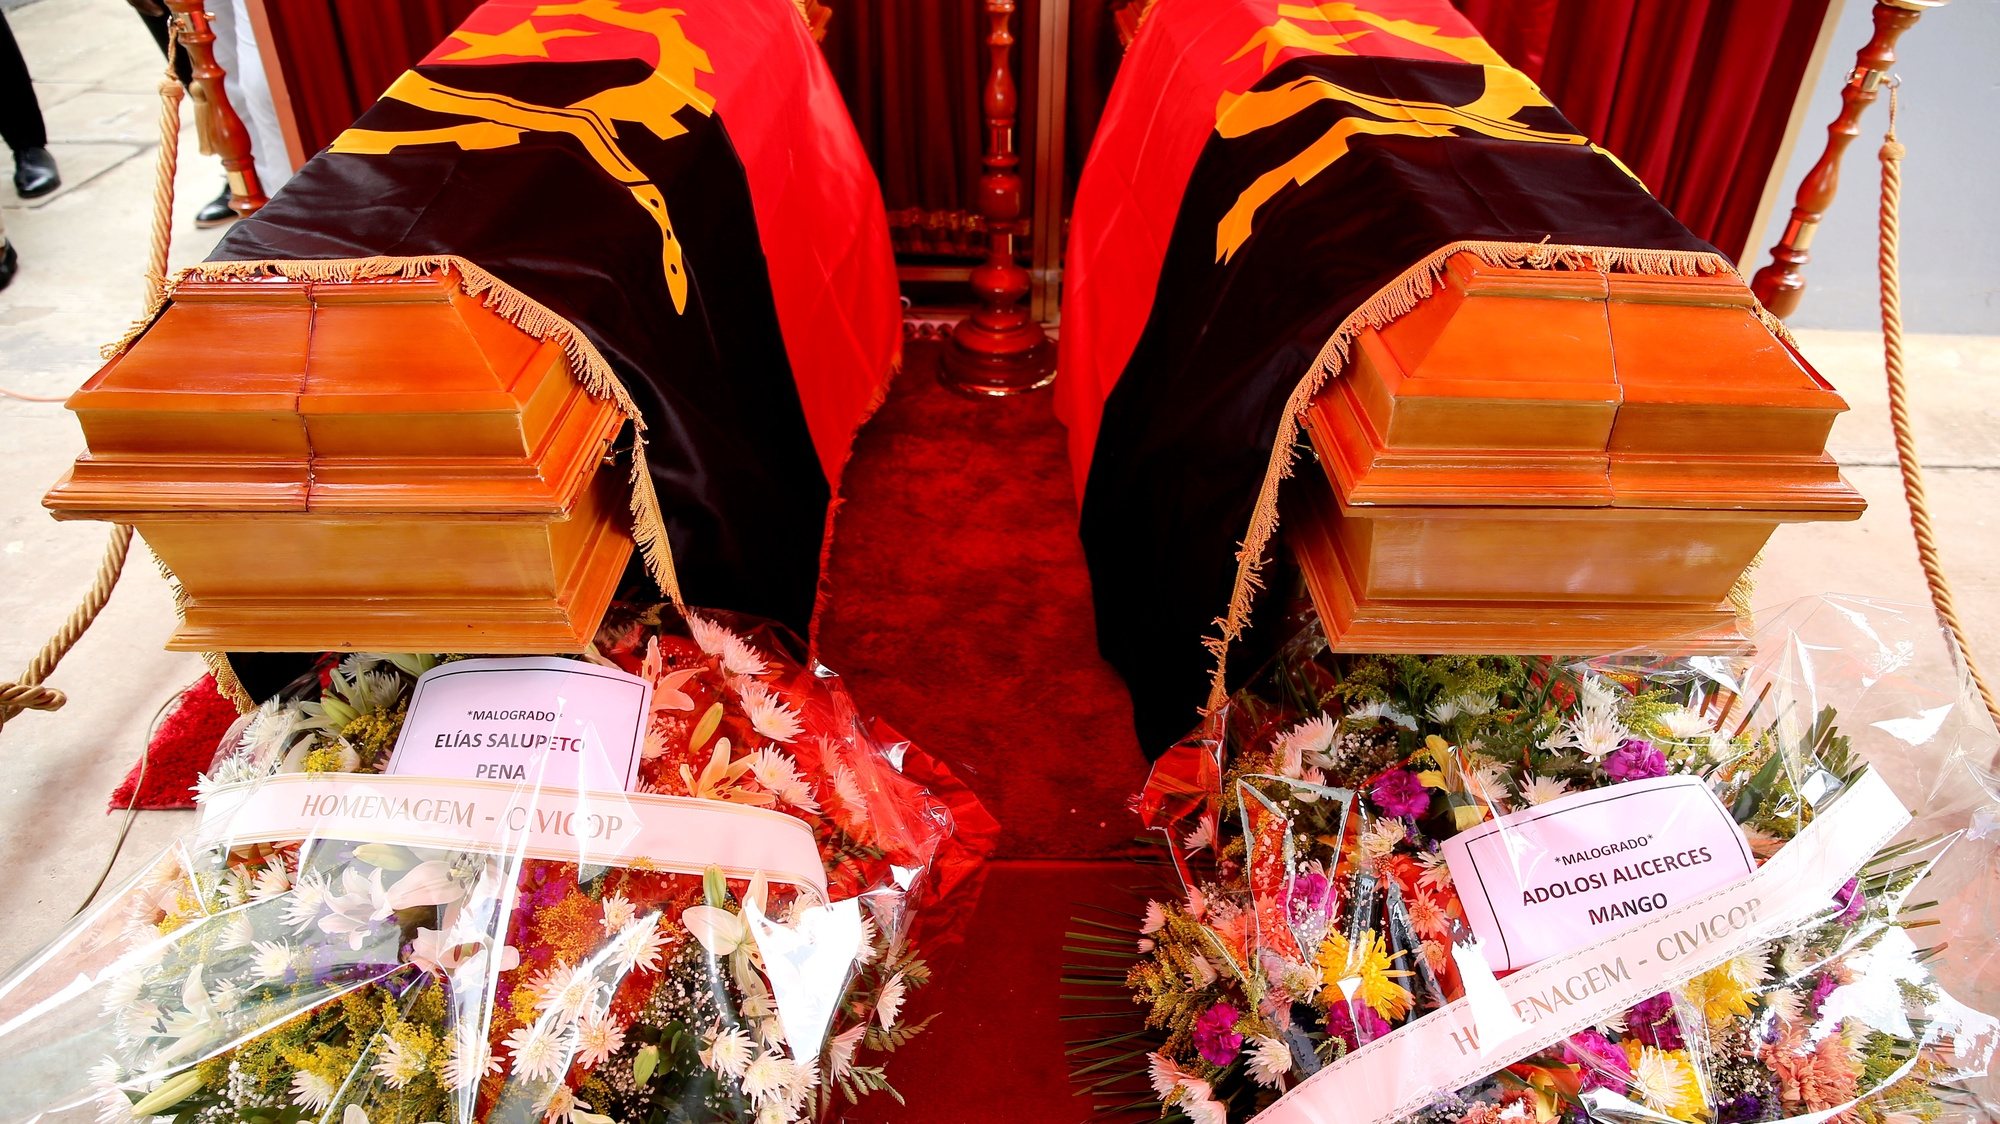 Caixões contendo os restos mortais dos dirigentes da Unita, Adolosi Mango e Elias Salupeto Pena, durante a cerimónia da comissão de Reconciliação e Memória das Vitimas dos Conflitos Políticos (CIVICOP), em Luanda, Angola, 15 de novembro de 2021. AMPE ROGÉRIO/LUSA